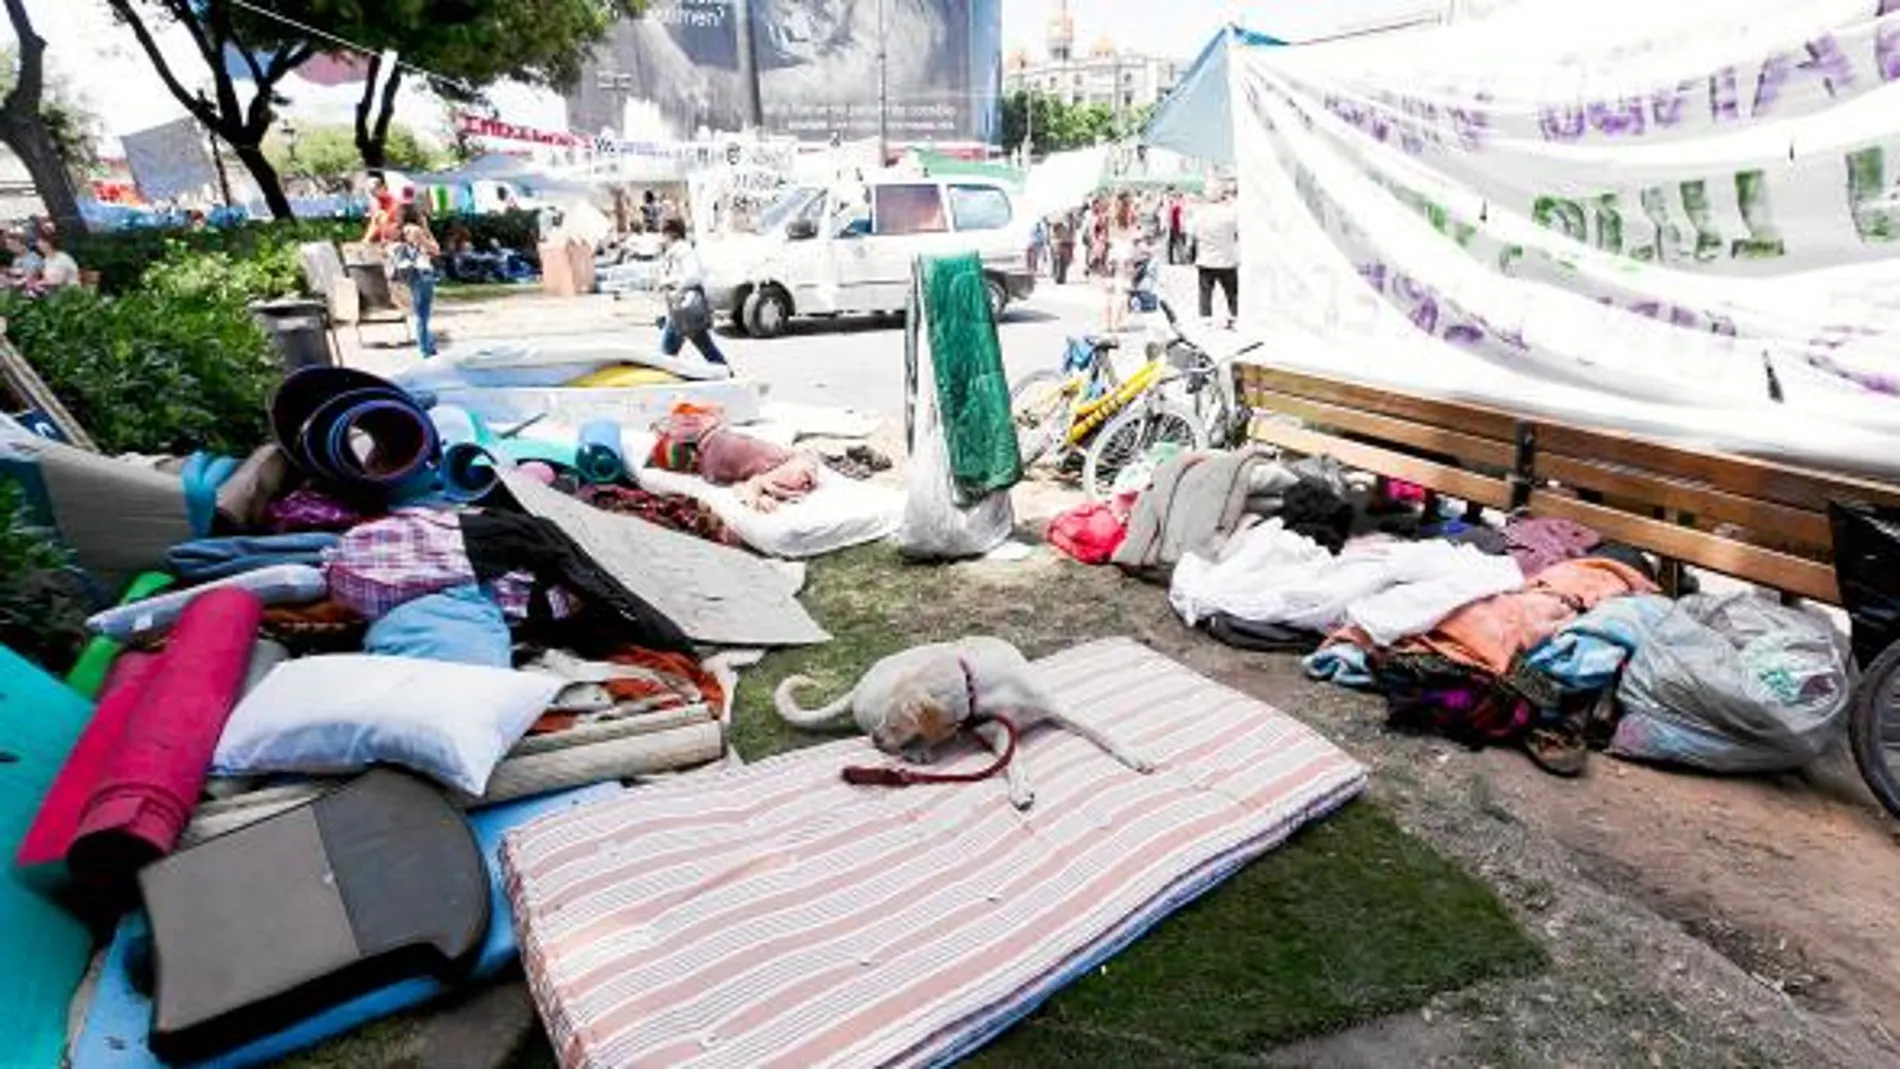 La indefinición en las posturas de los indignados ha afectado la imagen pública de una acampada que ha ido degenerando por la presencia de «okupas»